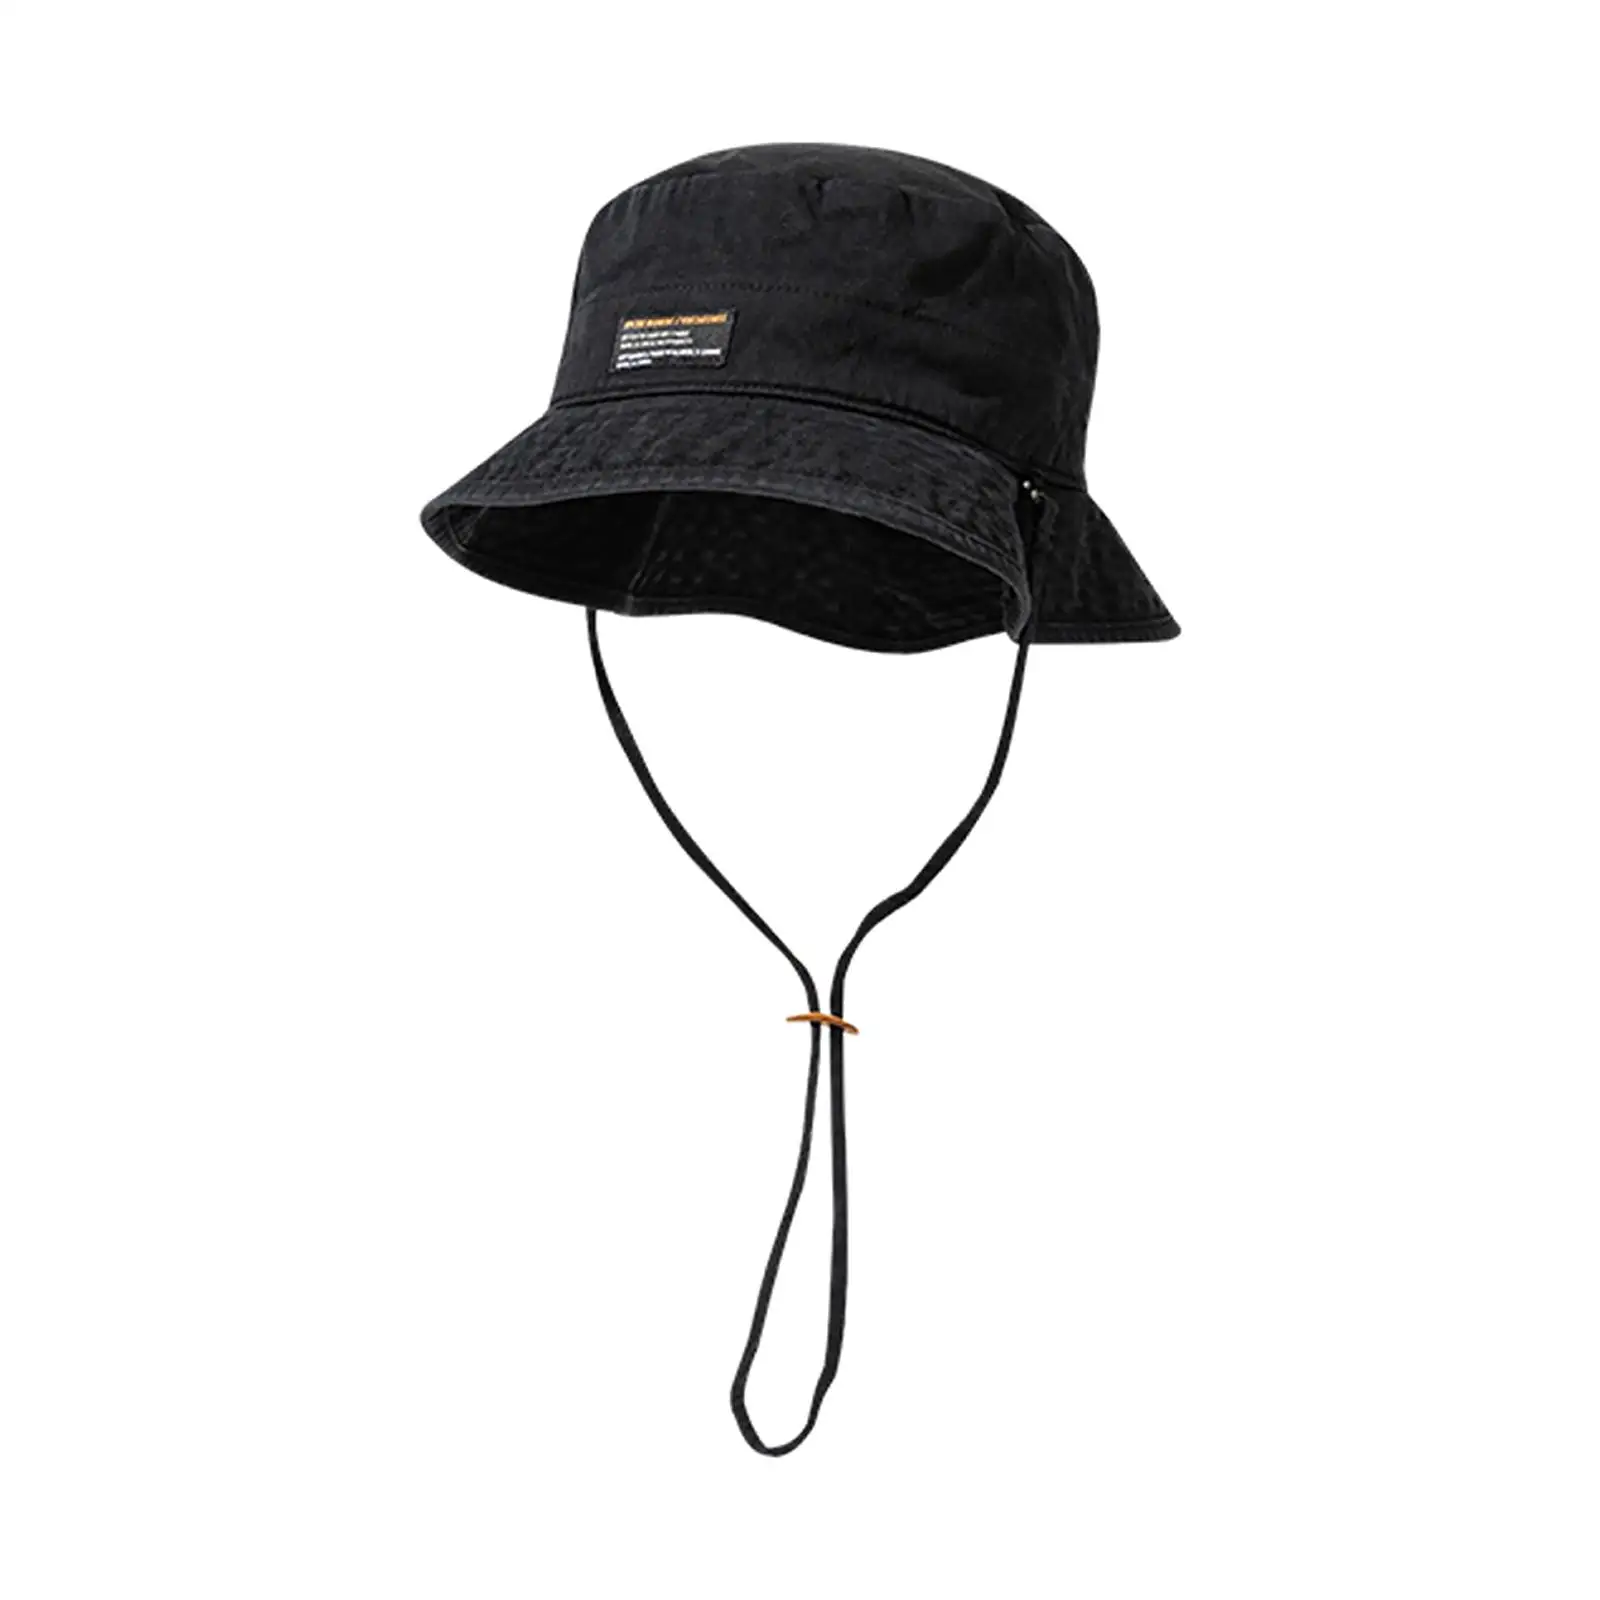 Fashion Bucket Hat Women Men Sun Protective Fisherman Hats Climbing Hiking